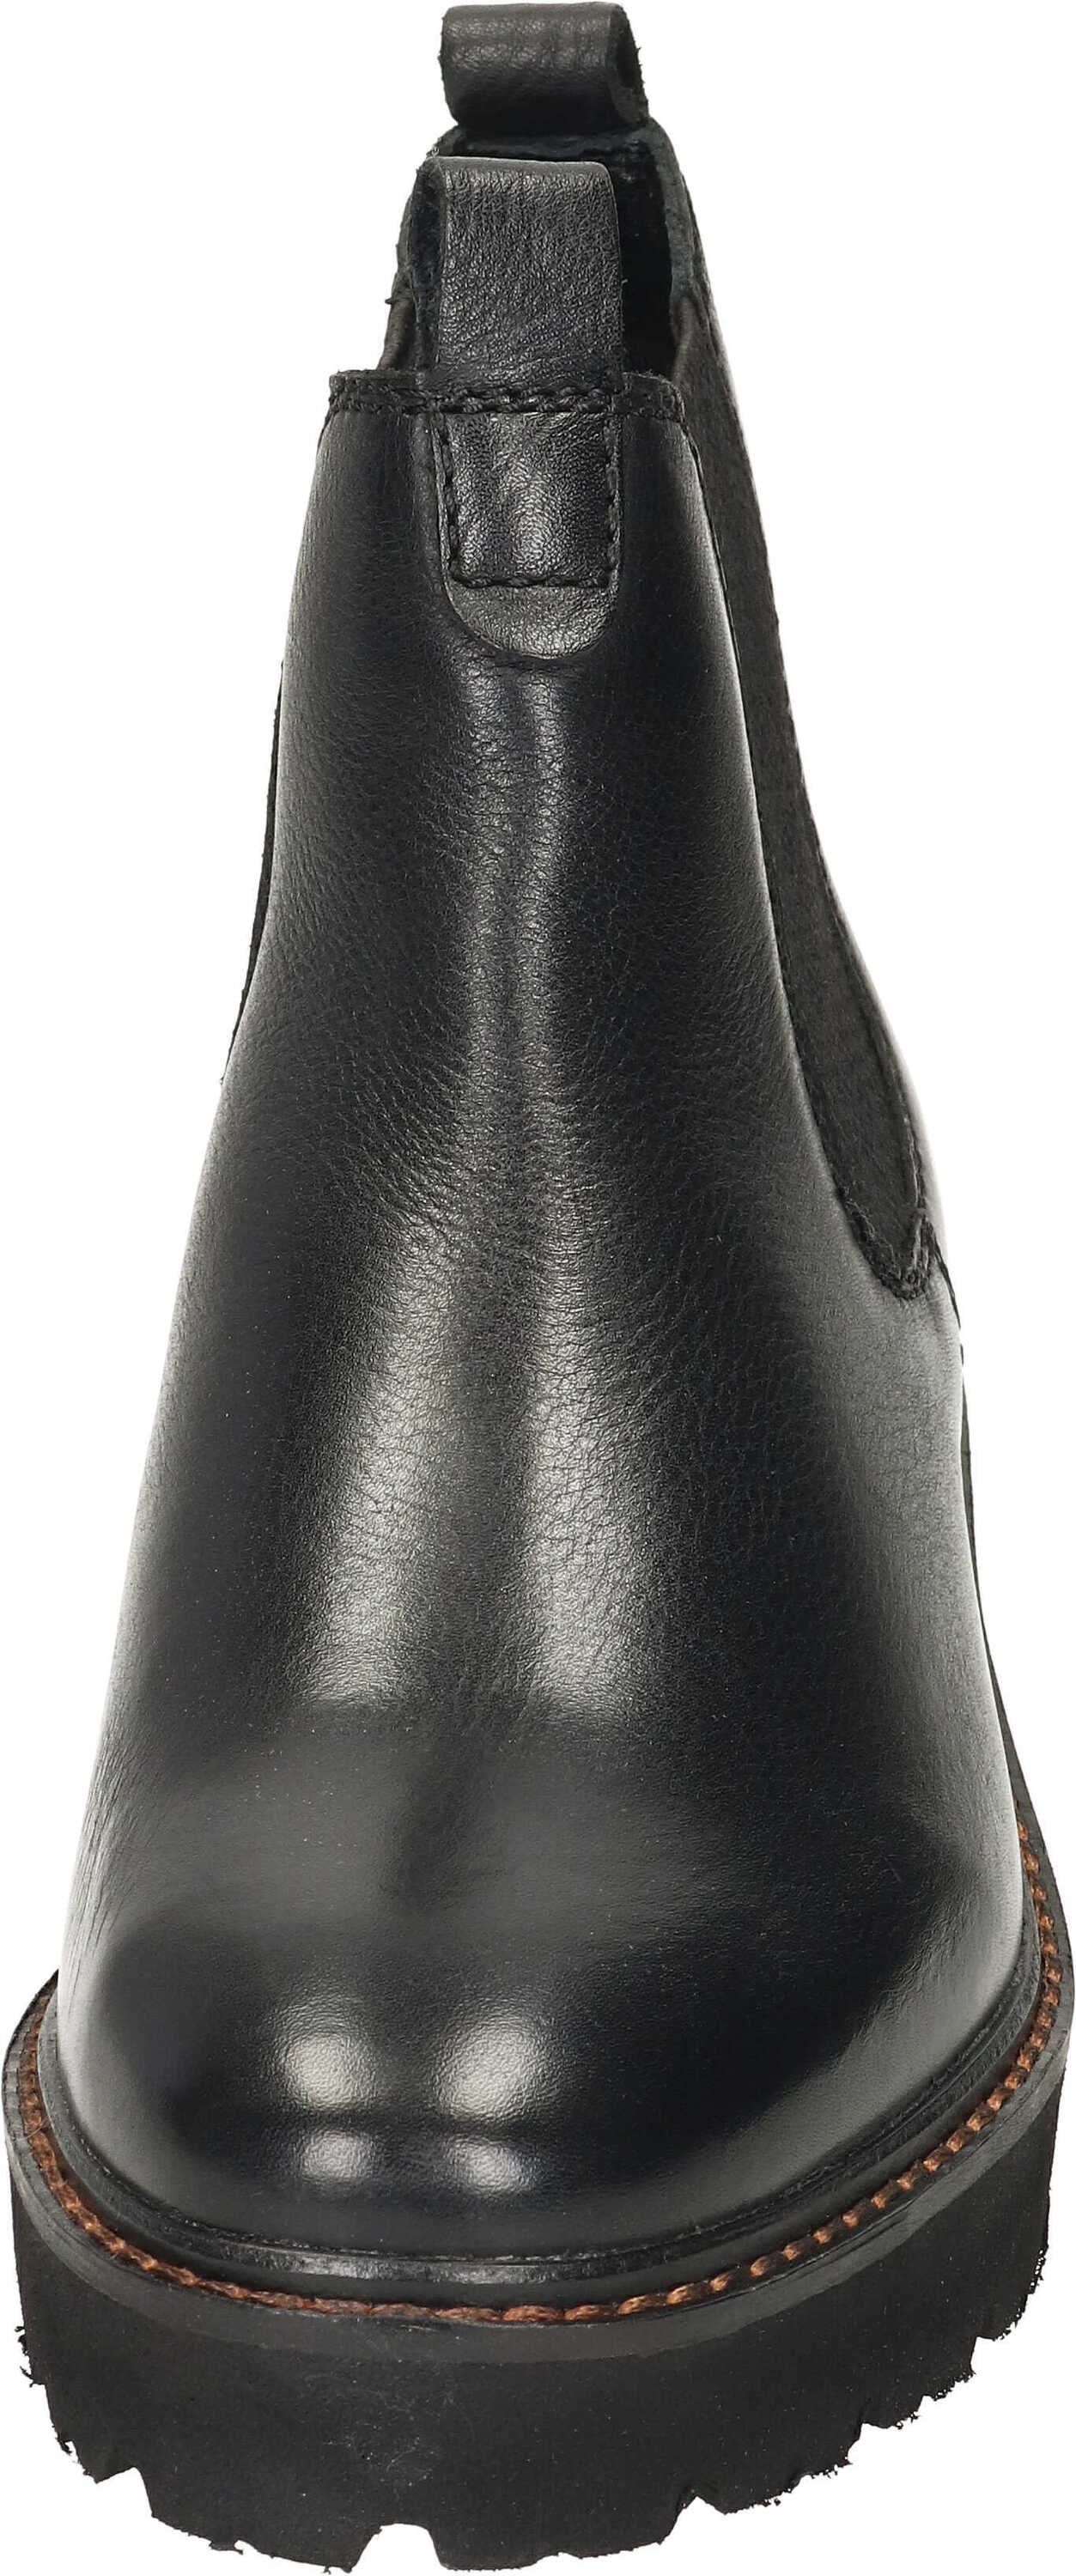 Ara Stiefeletten Stiefelette schwarz echtem aus Leder